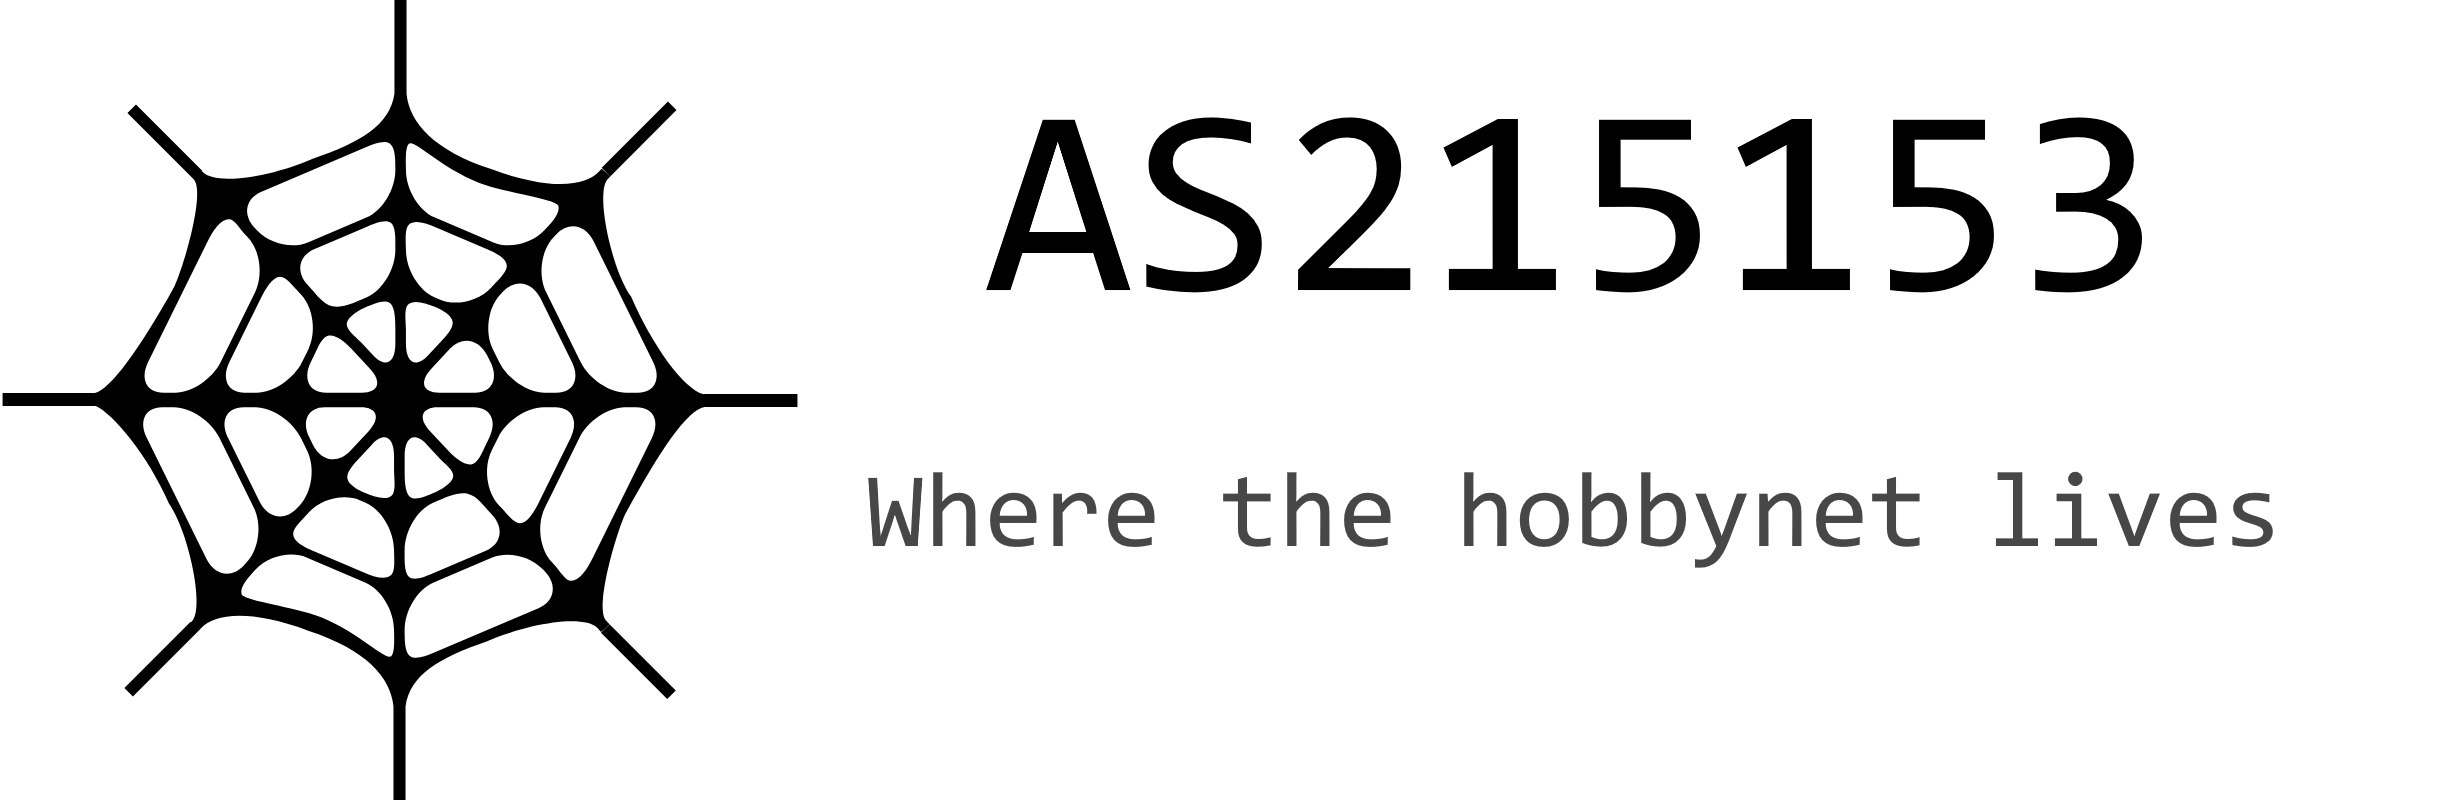 AS215153 - Where the Hobbynet lives logo